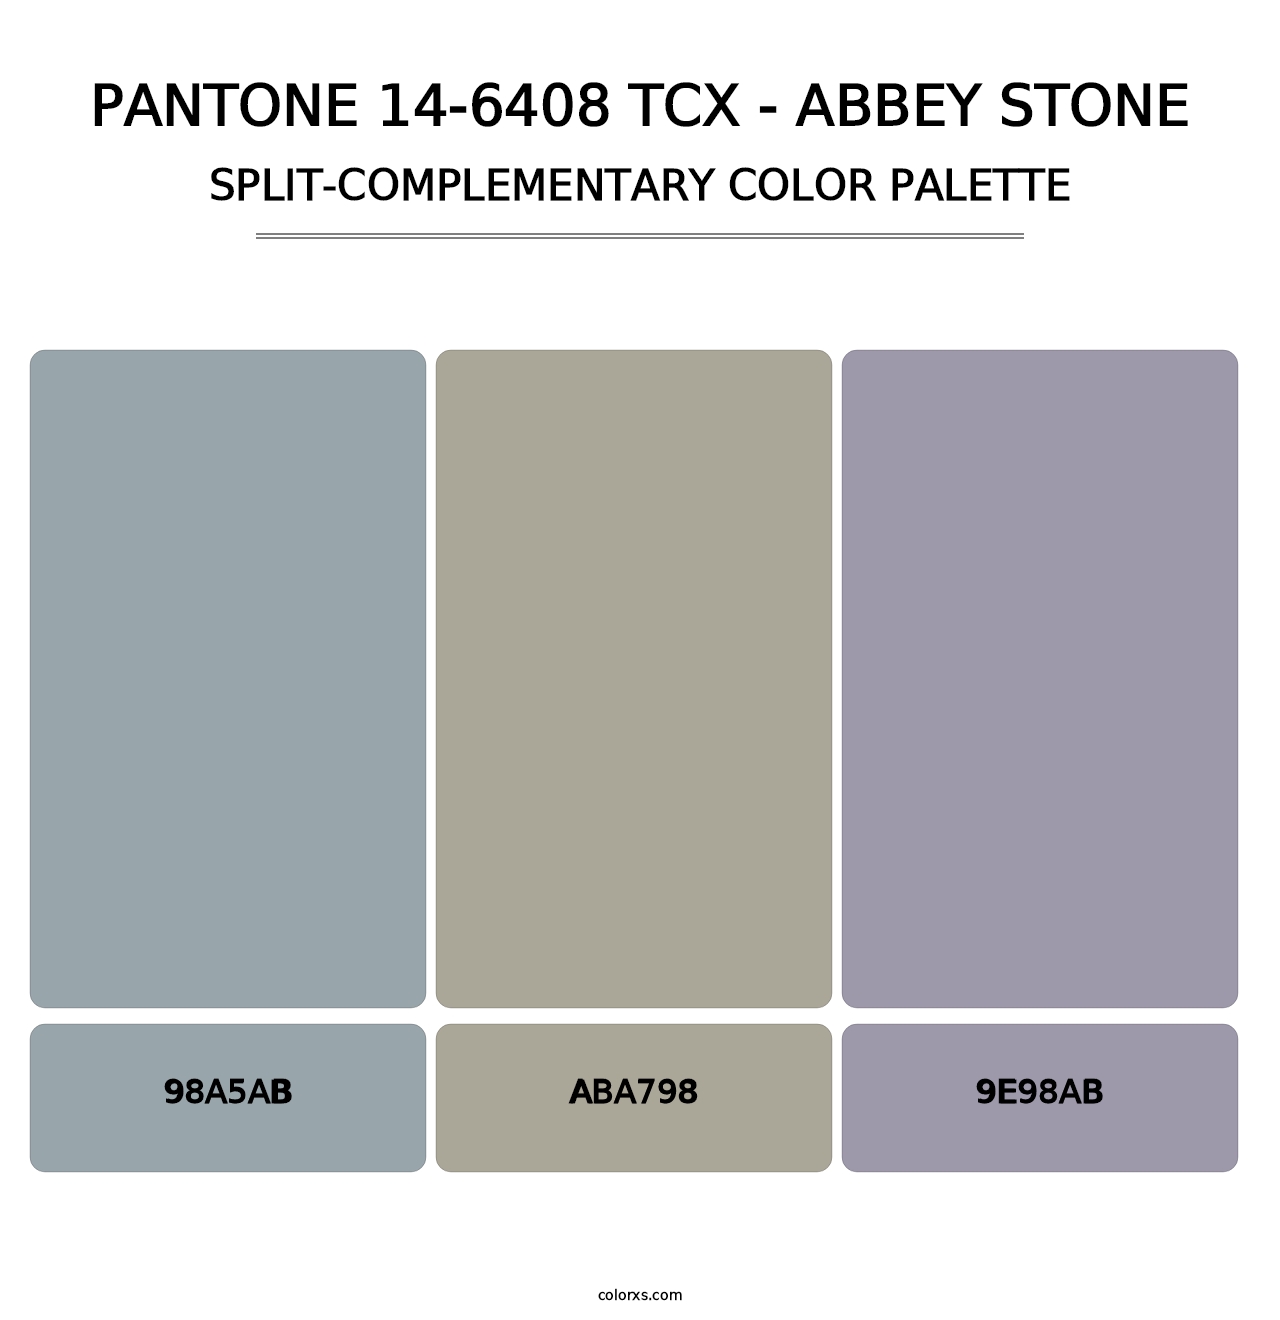 PANTONE 14-6408 TCX - Abbey Stone - Split-Complementary Color Palette